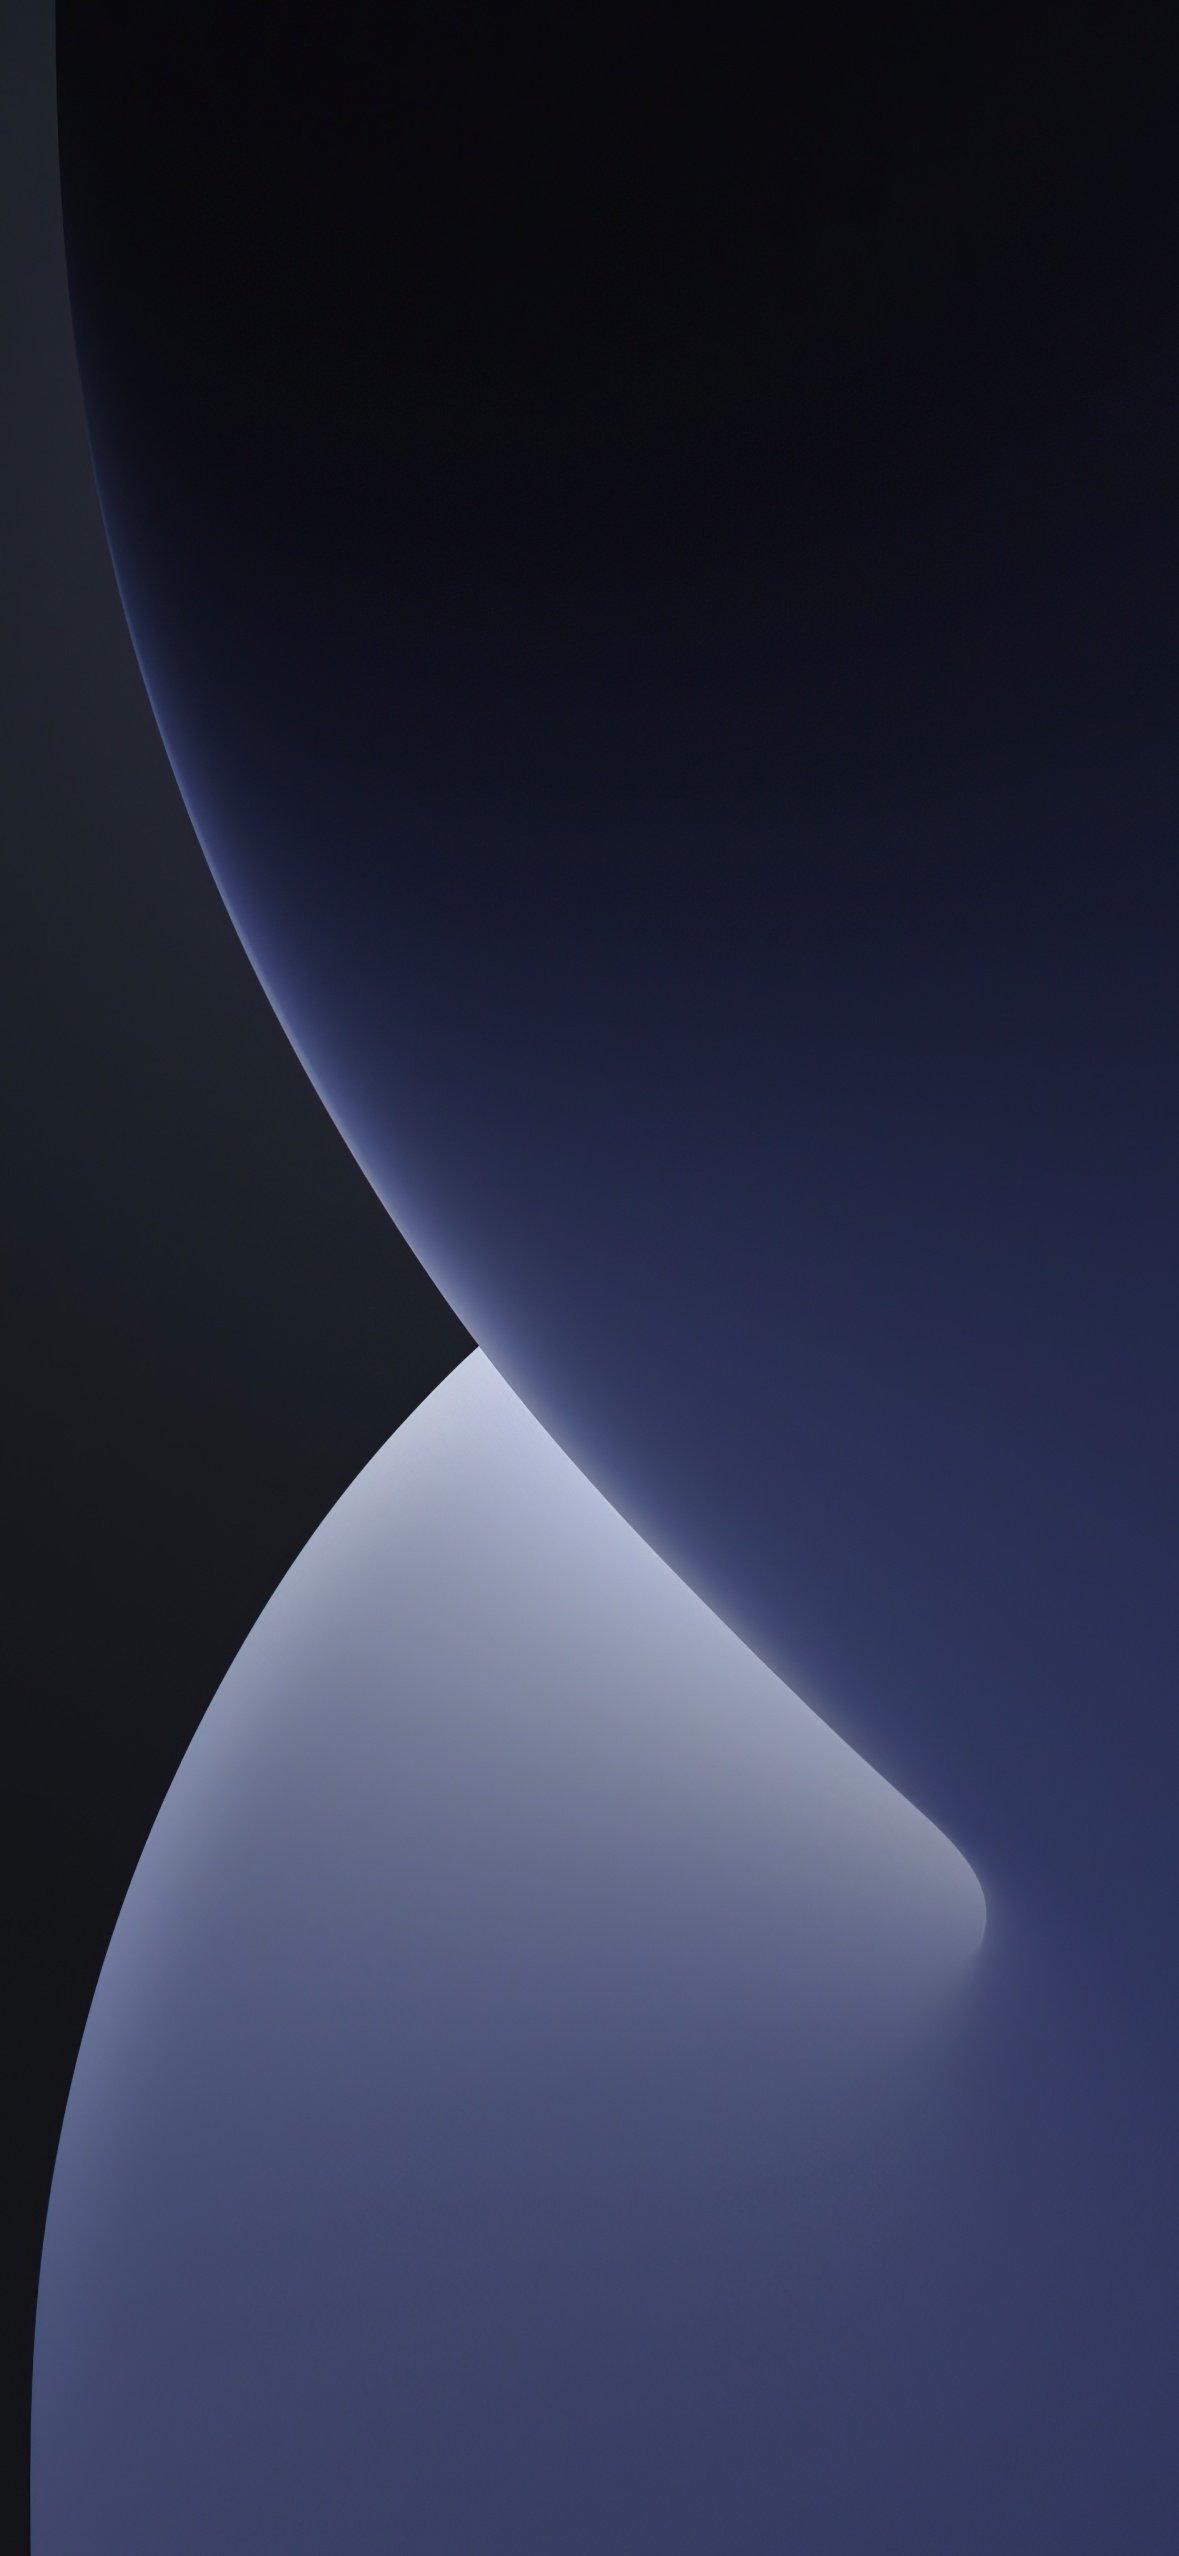 iOS 14 Wallpapers 4K, WWDC, 2020, iPhone 12, Black/Dark,